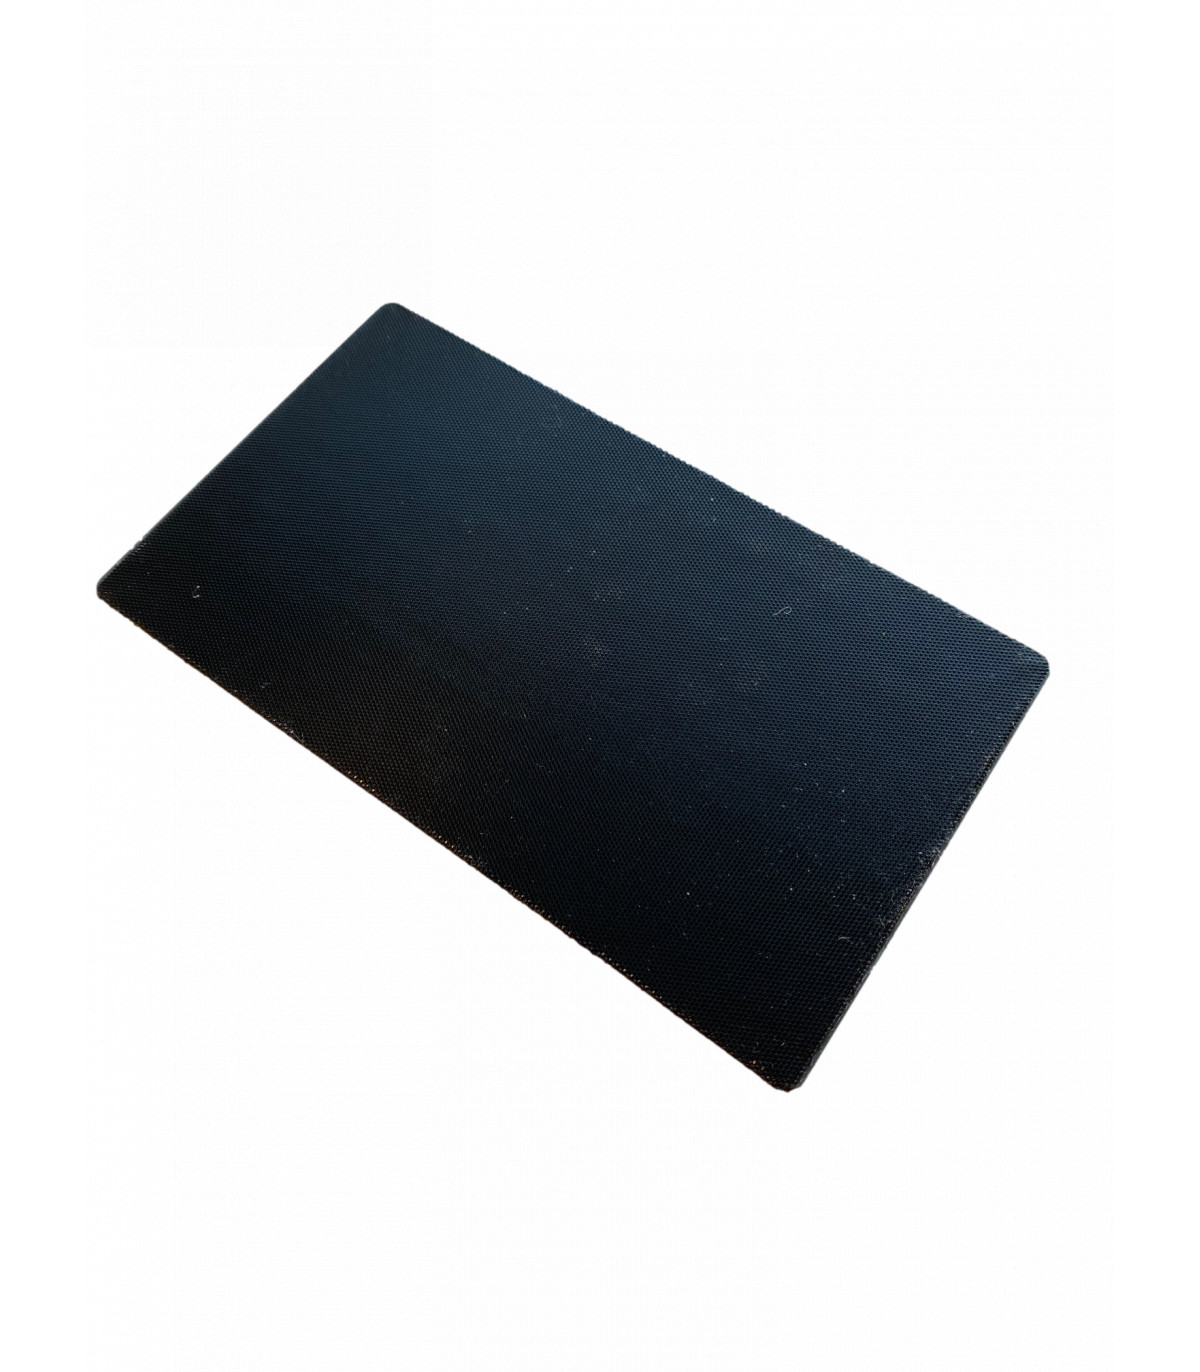 Kovax Assilex sanding block intermediate pad